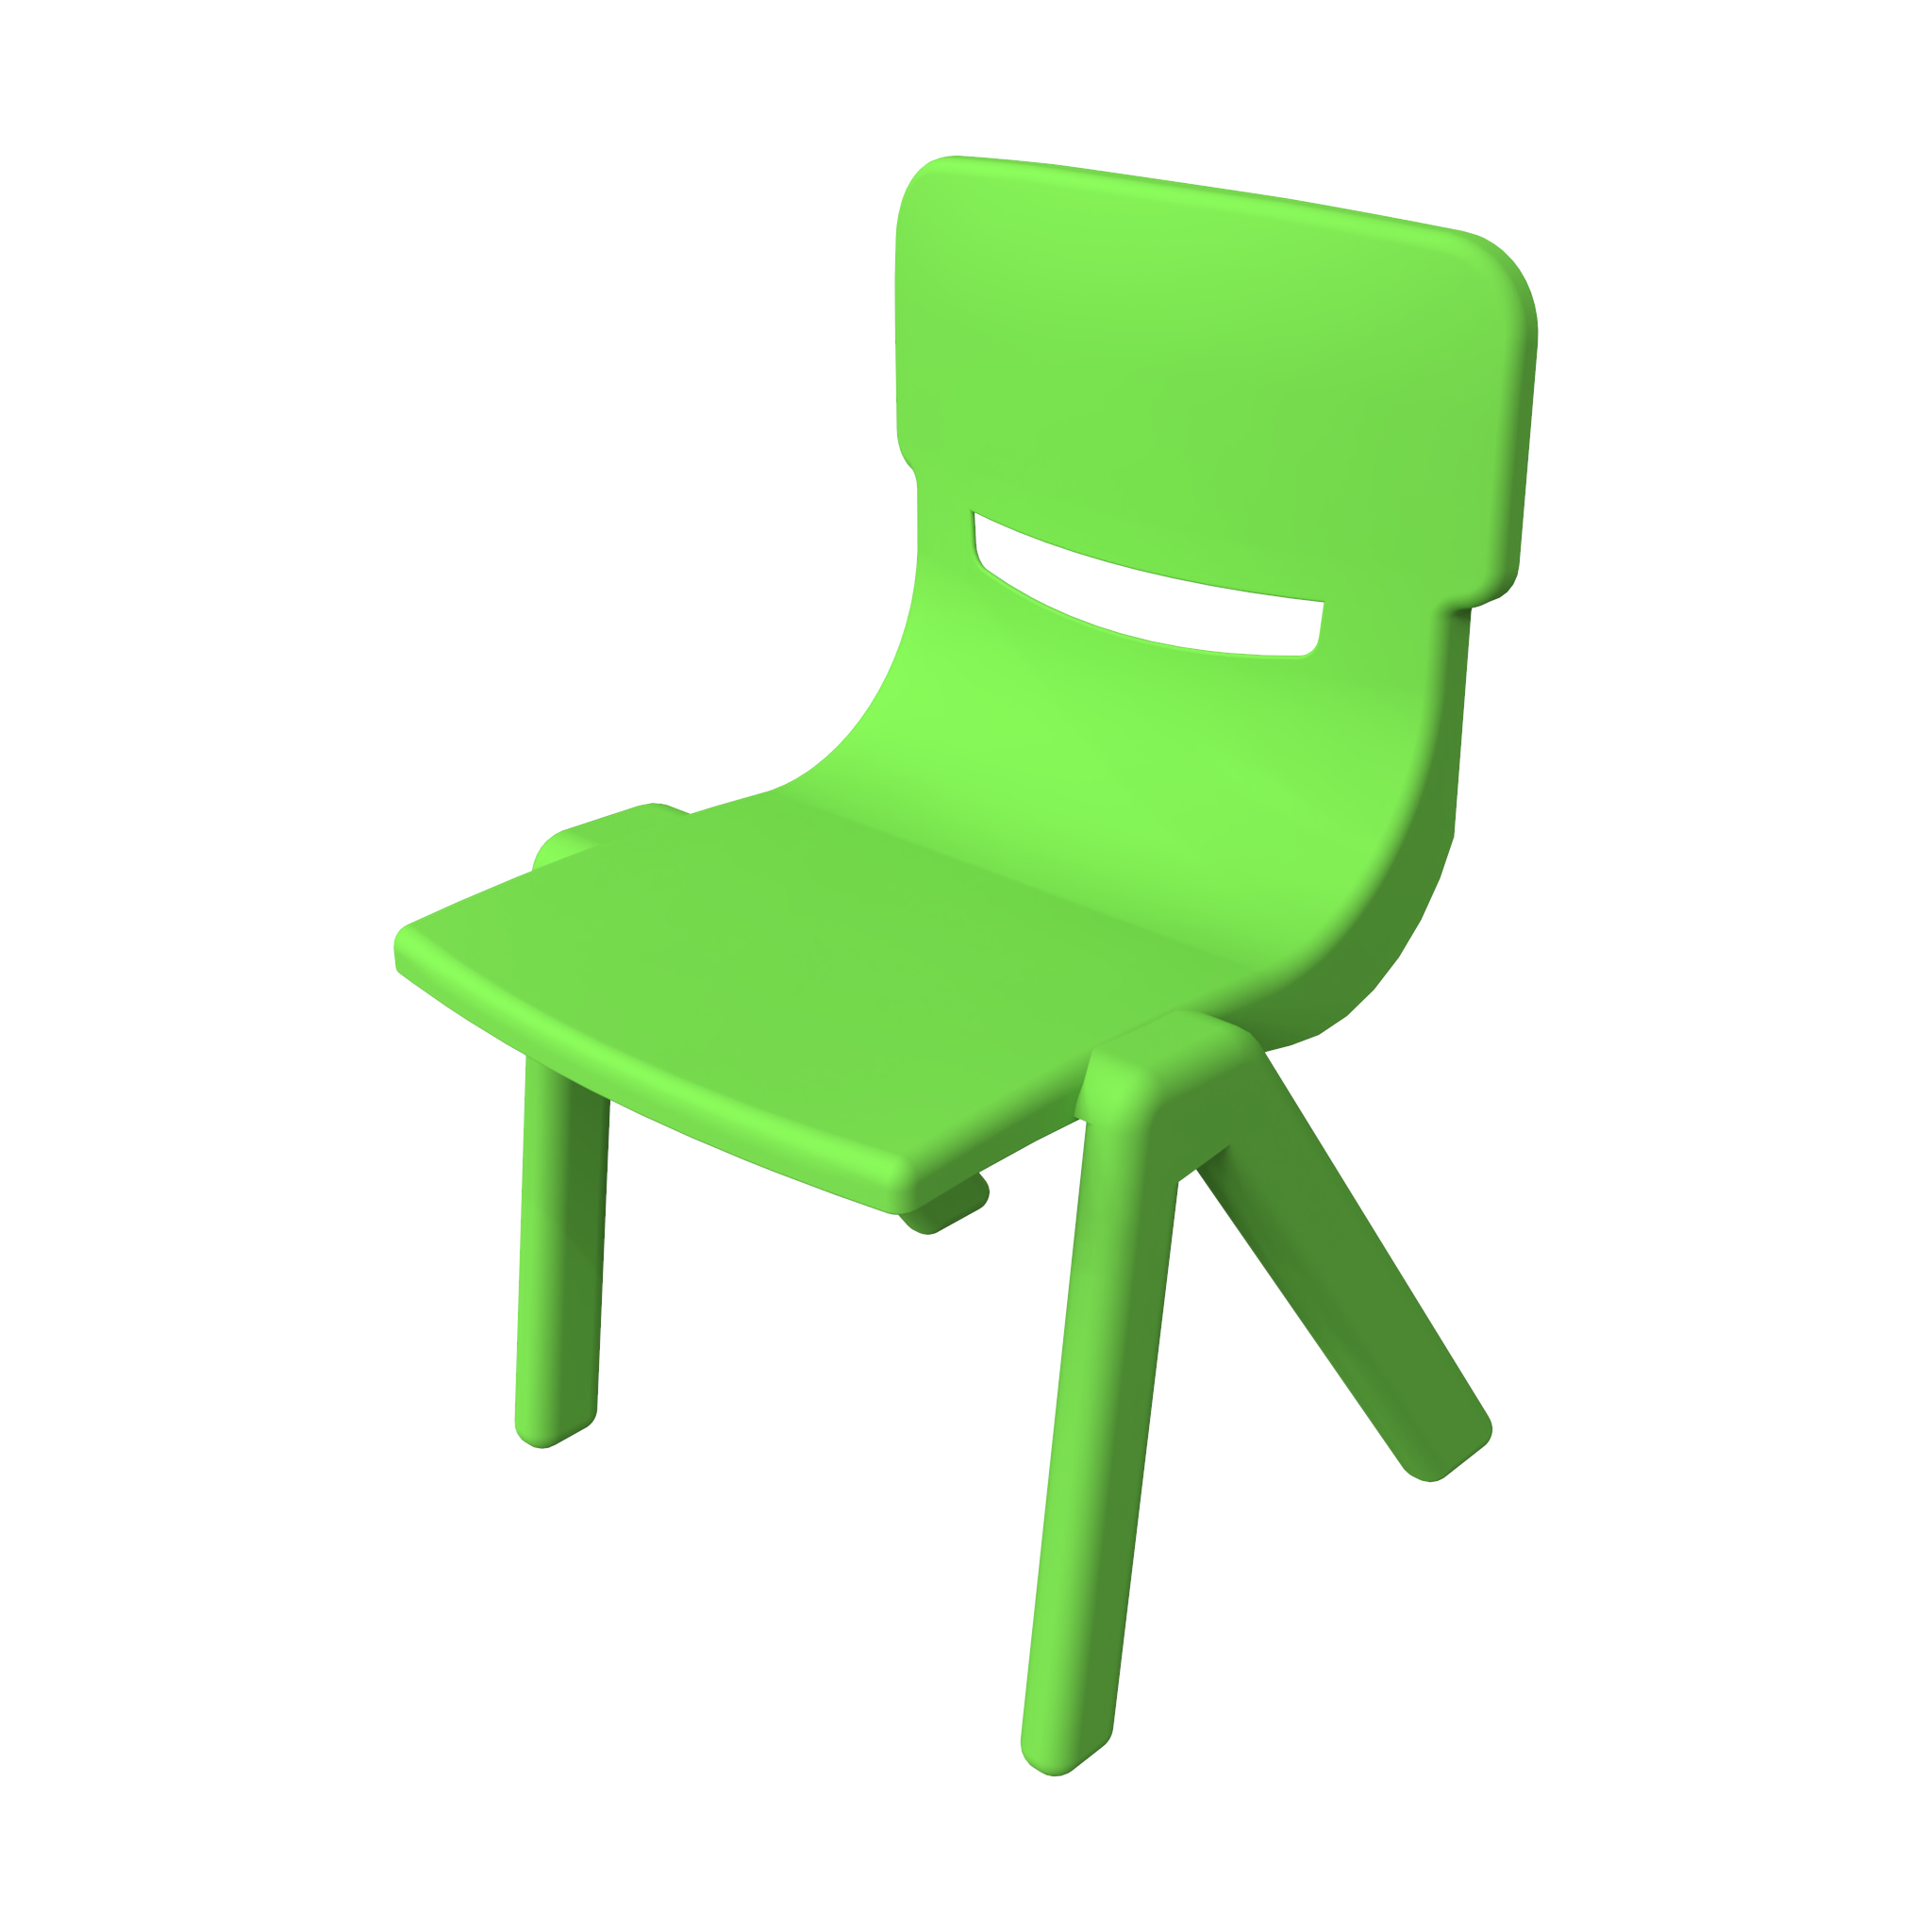 Dieses Bild zeigt eine Kindermöbel Fun chair Green